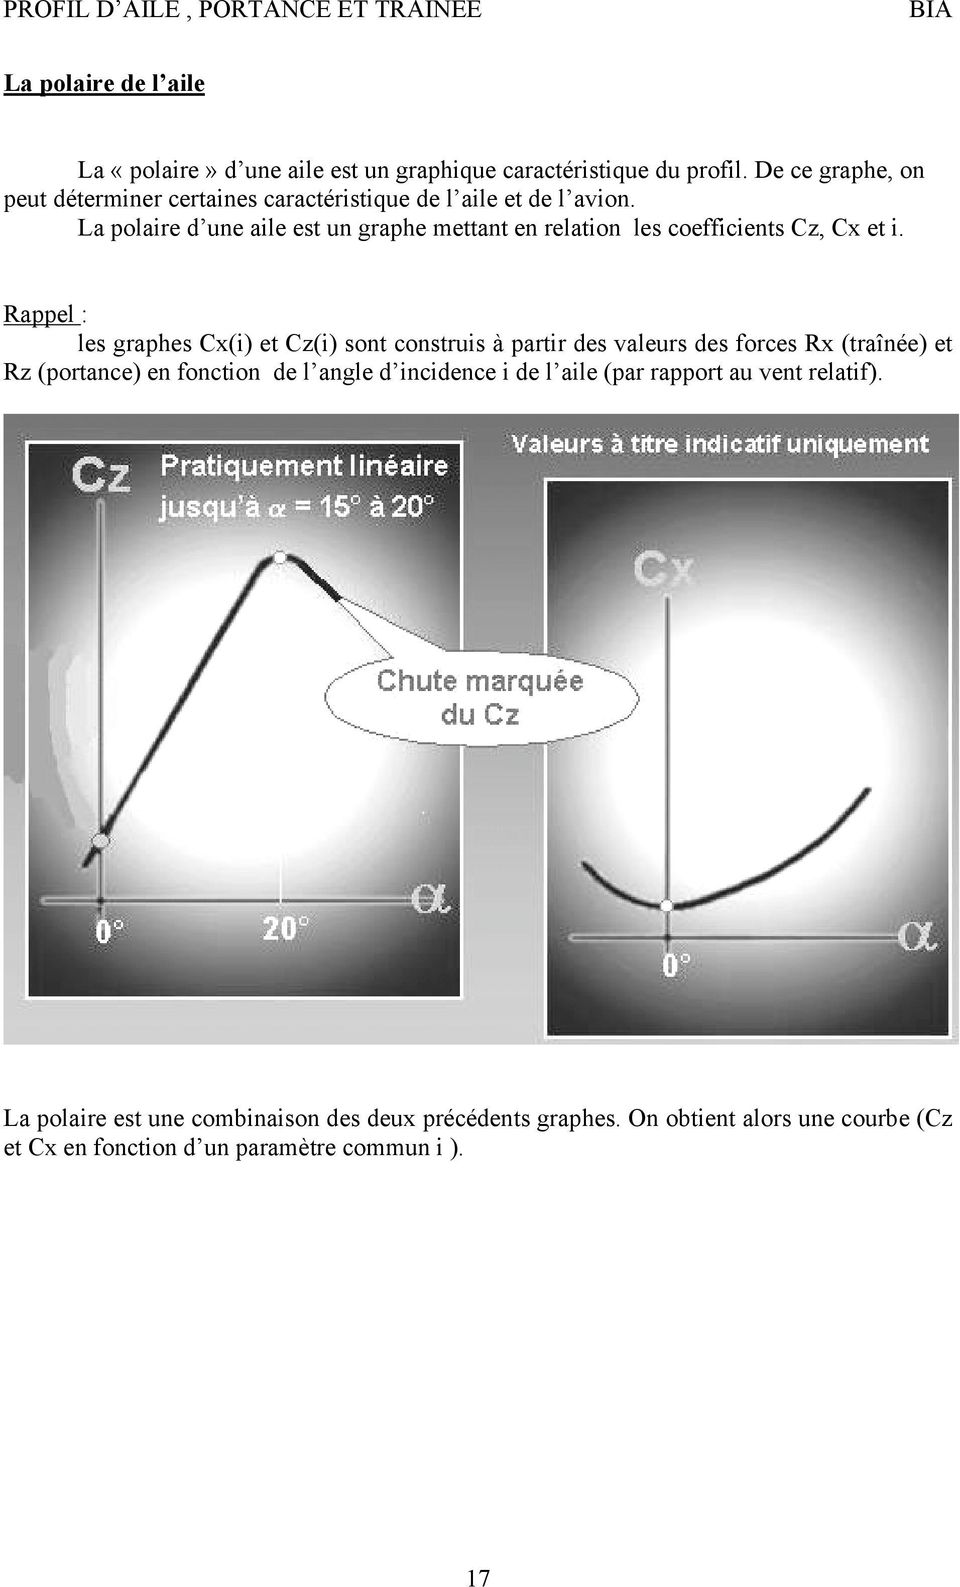 La polaire d une aile est un graphe mettant en relation les coefficients Cz, Cx et i.